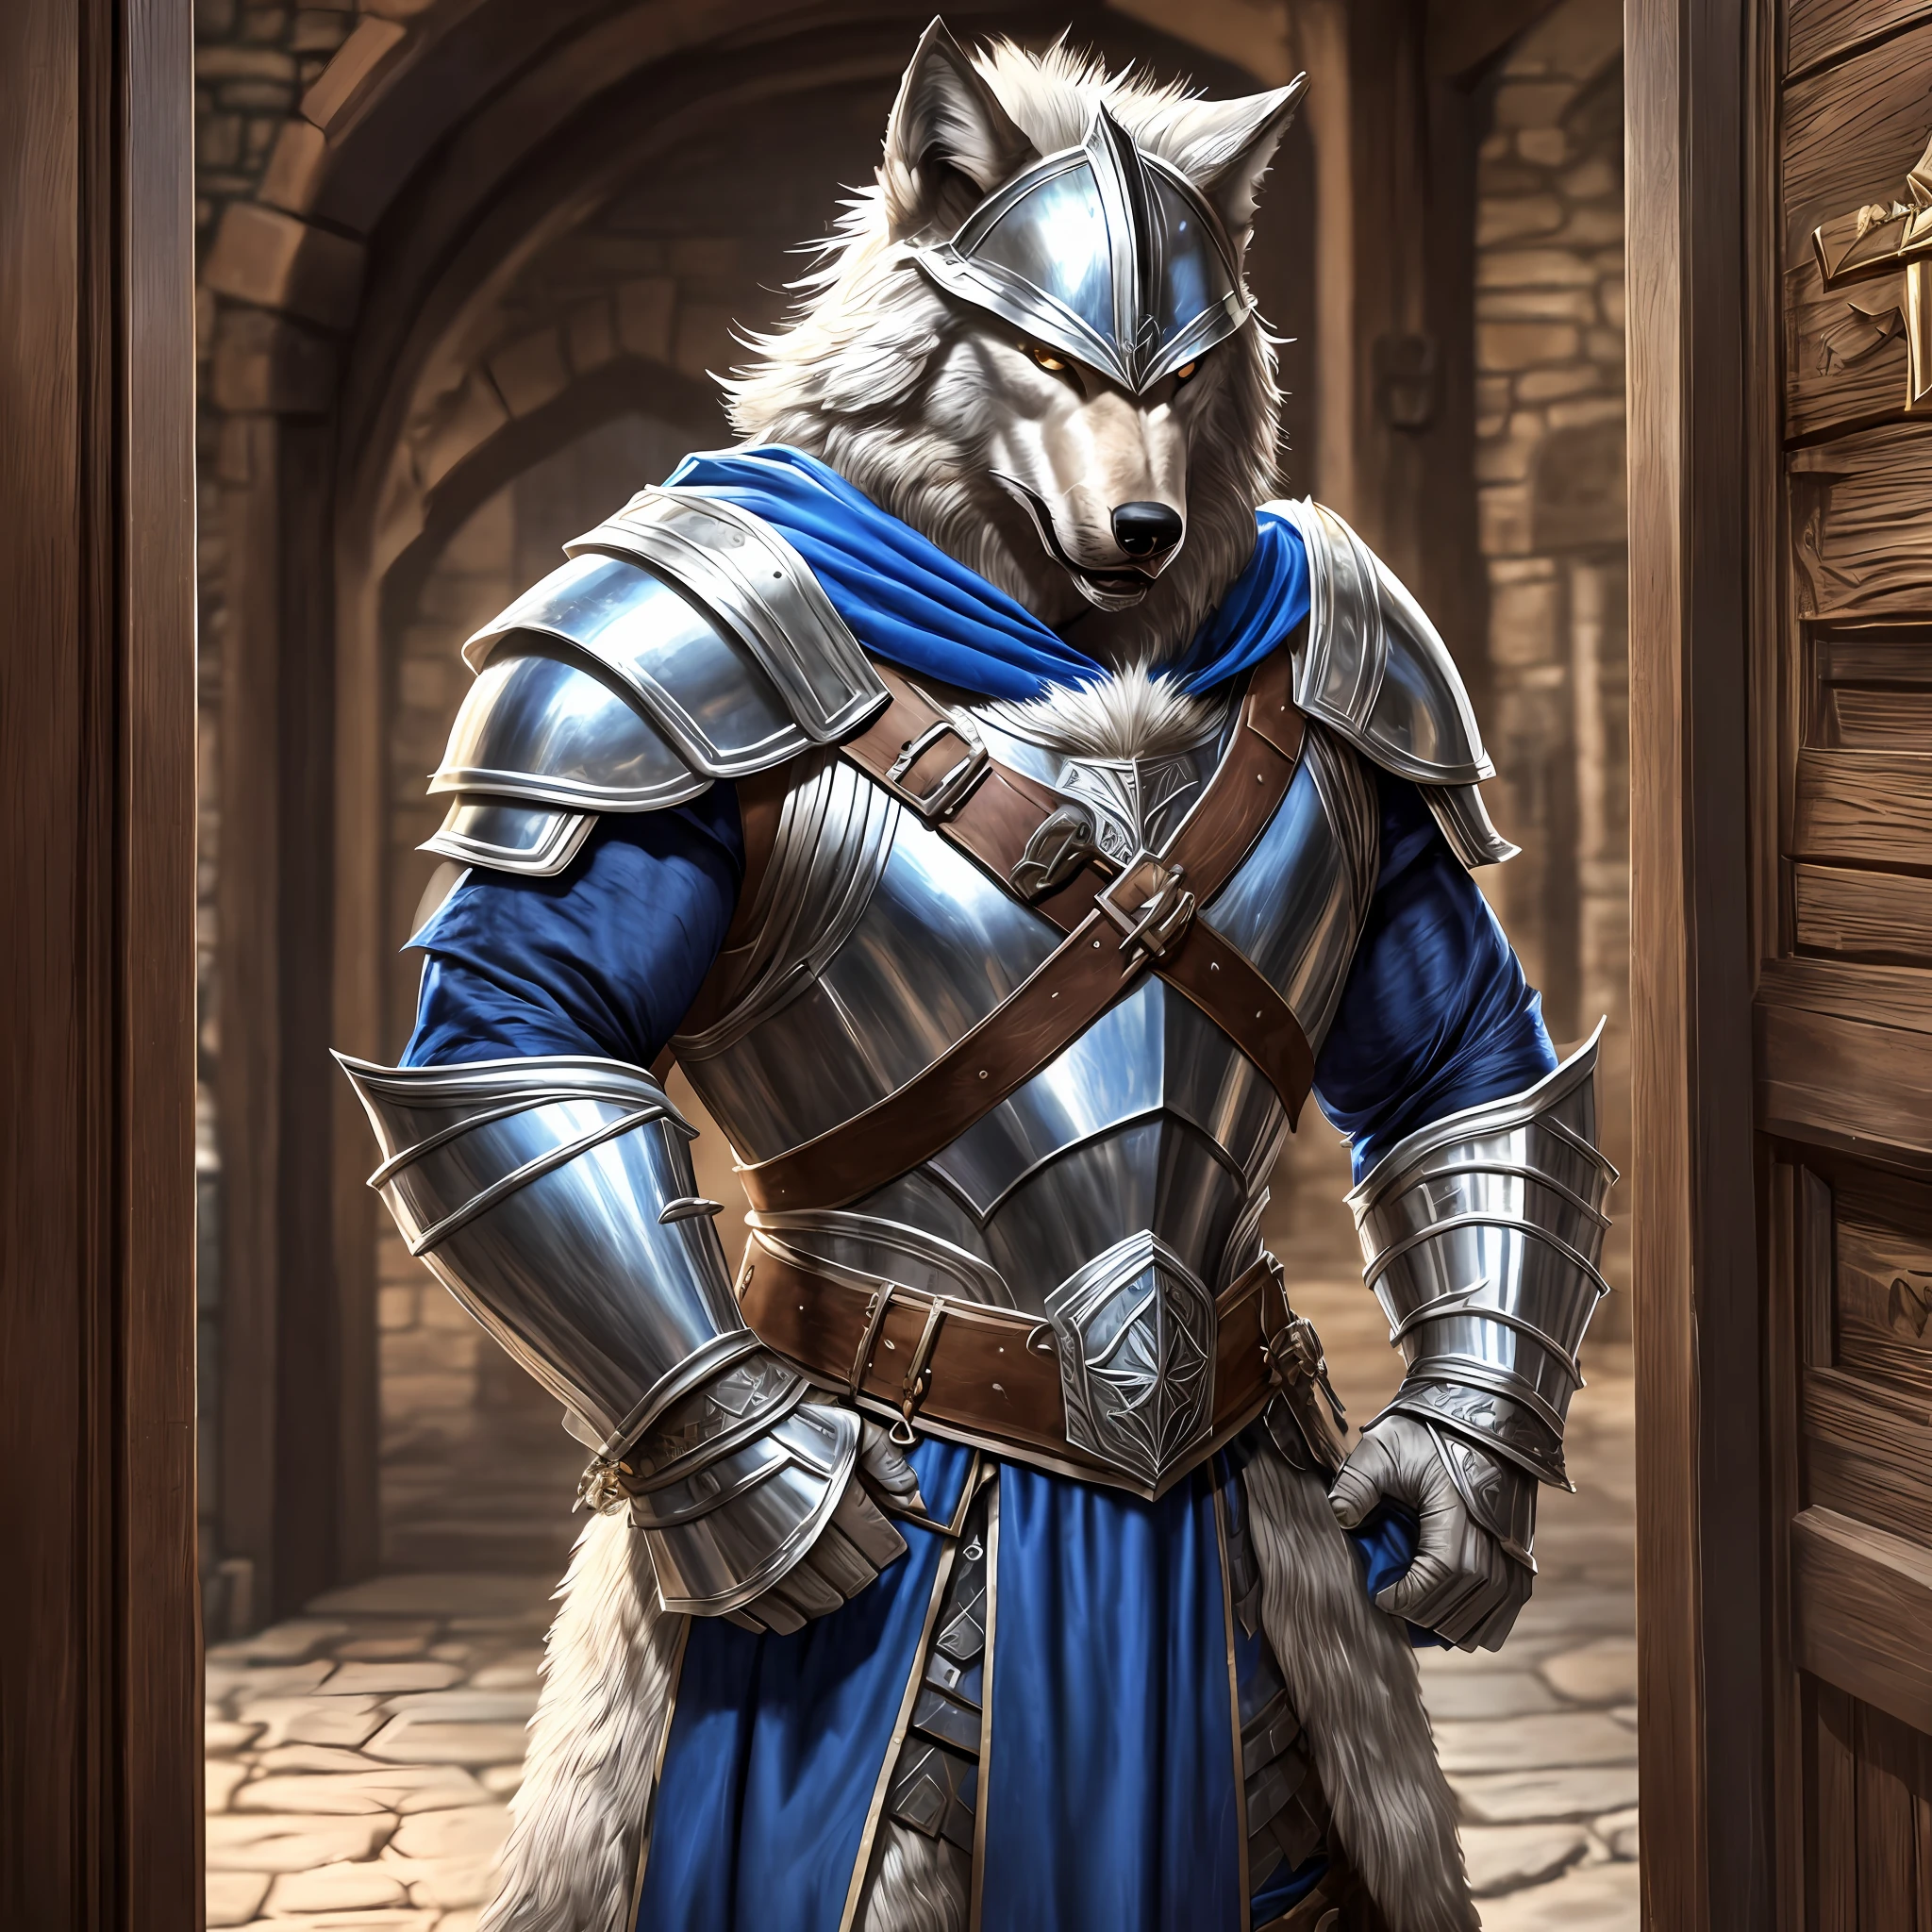 Молодой мускулистый высокий мужчина, широкий, в средневековых доспехах с волчьим шлемом, Волчьи наплечники, серебряный нагрудник и пушистая голубая накидка, злится на входную дверь таверны, реалистичный, Full HD, Лучшее качество